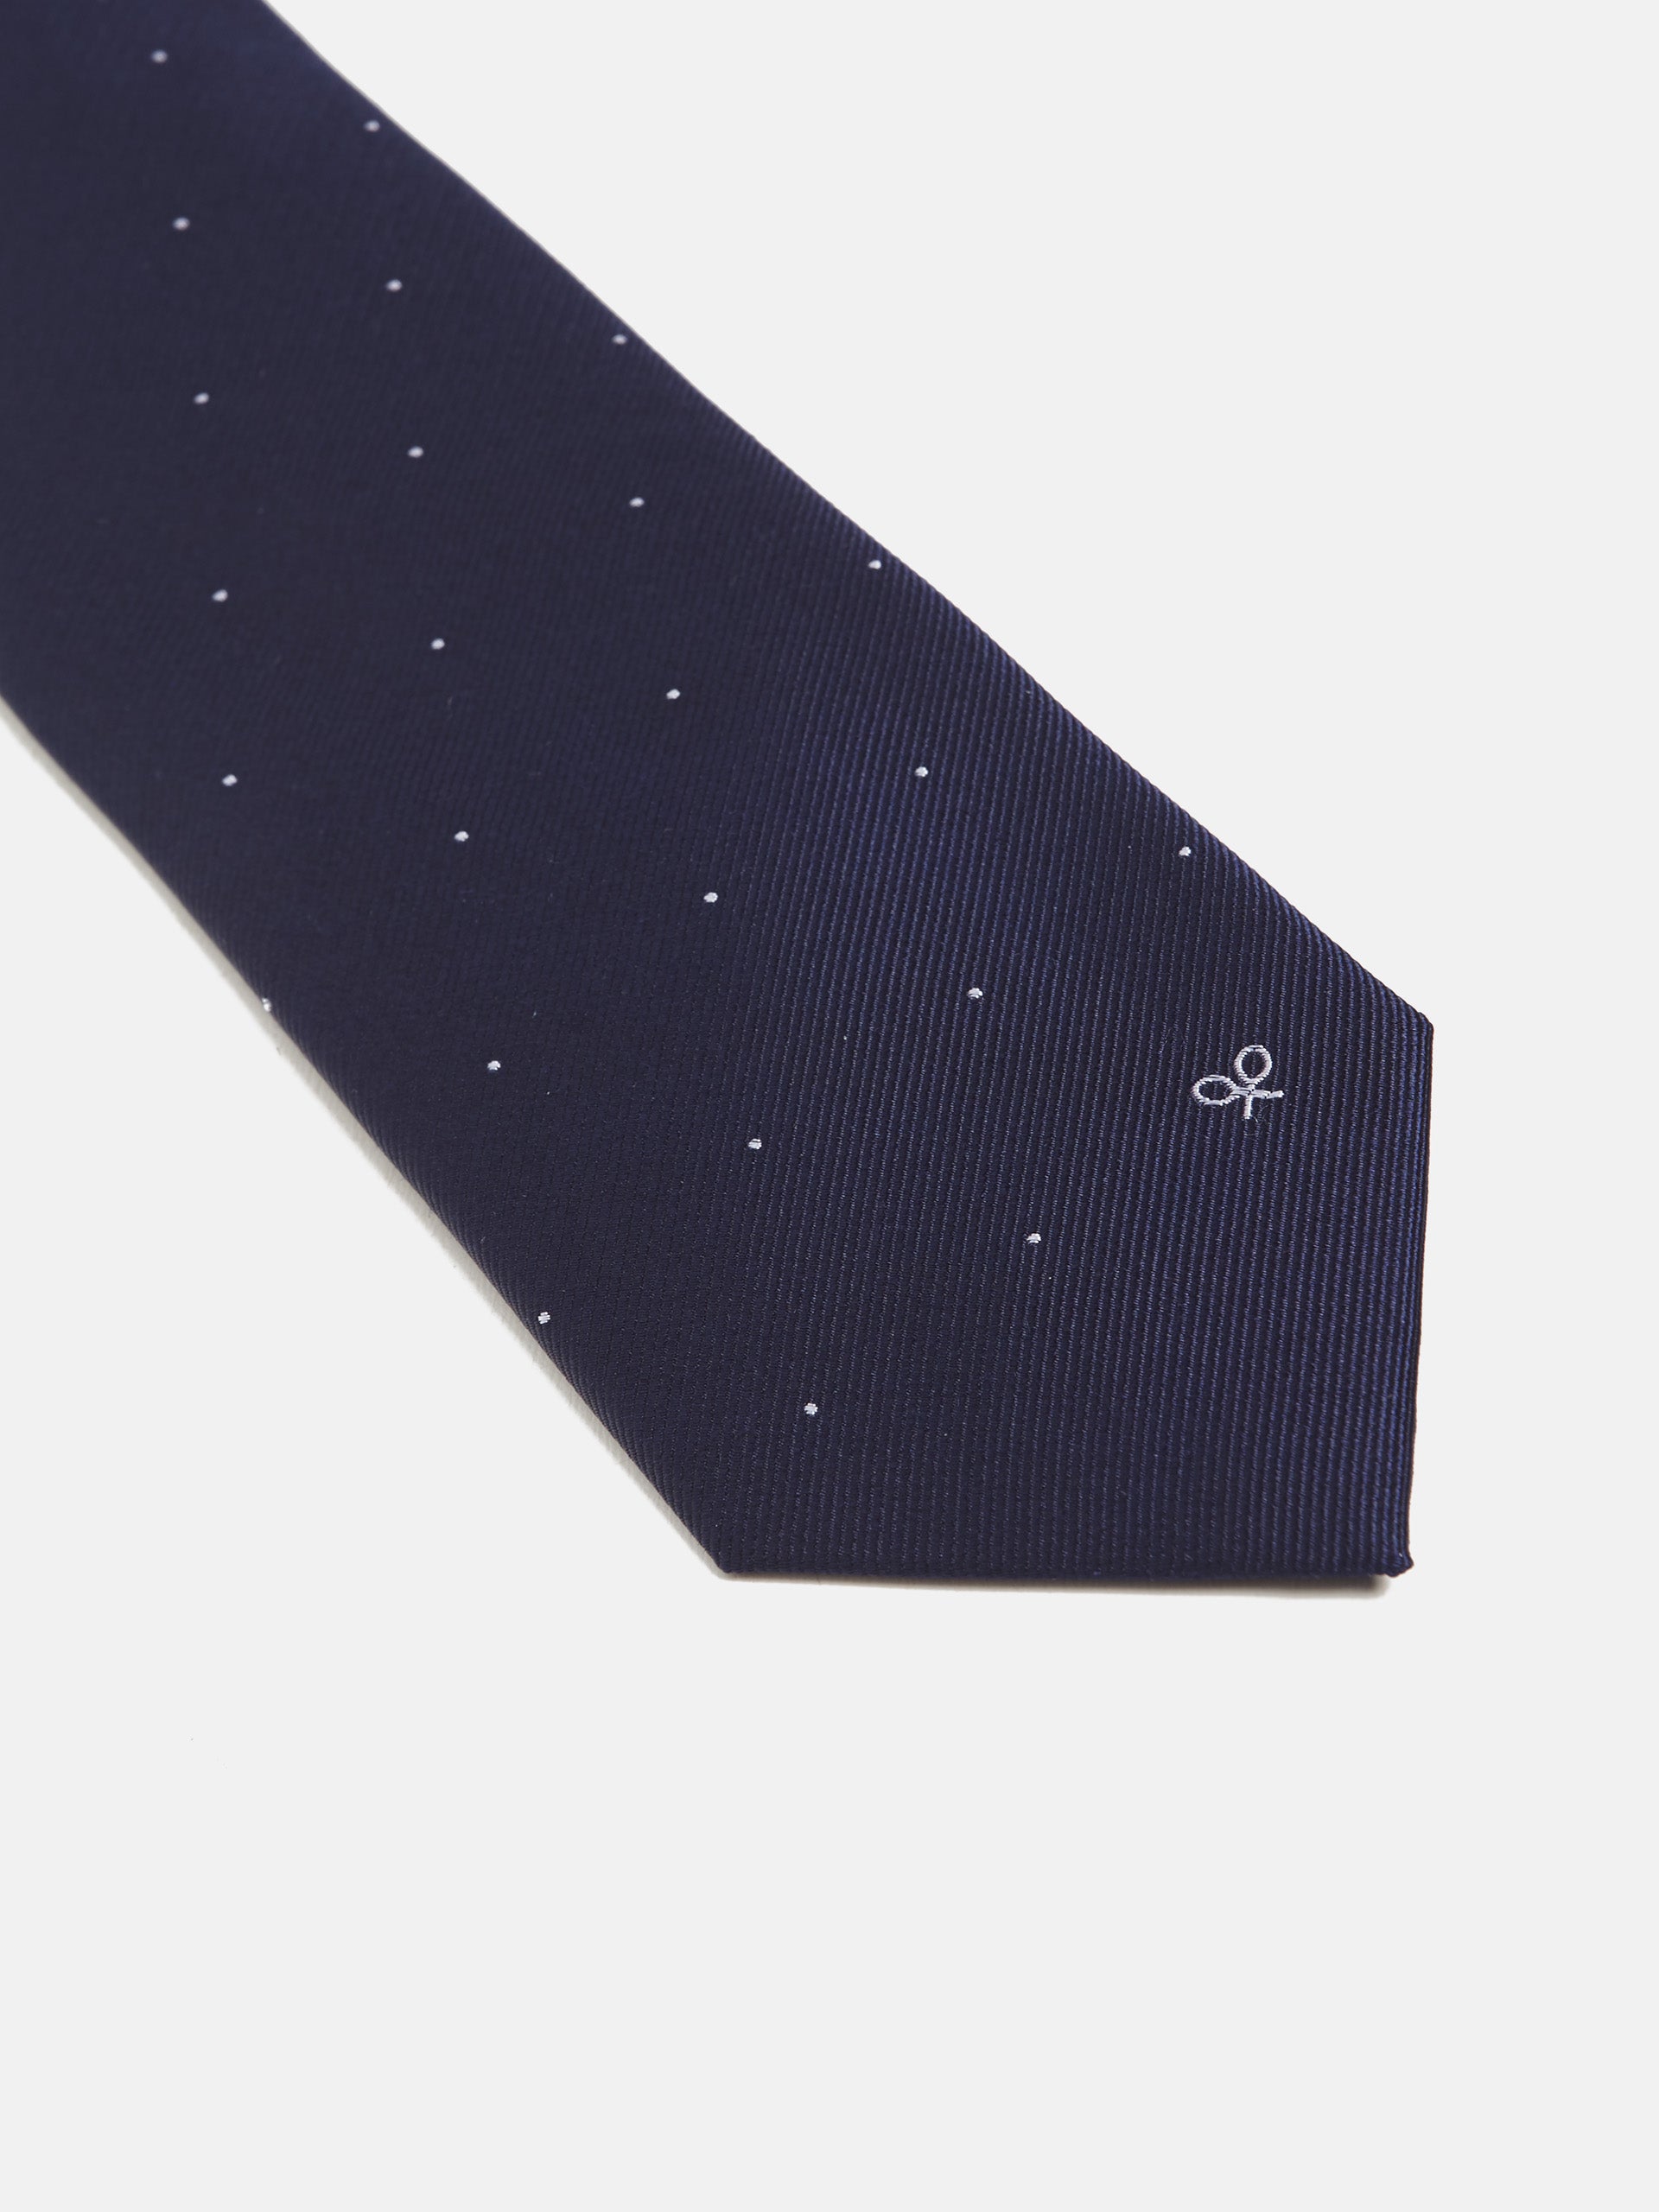 White navy micro-knit tie